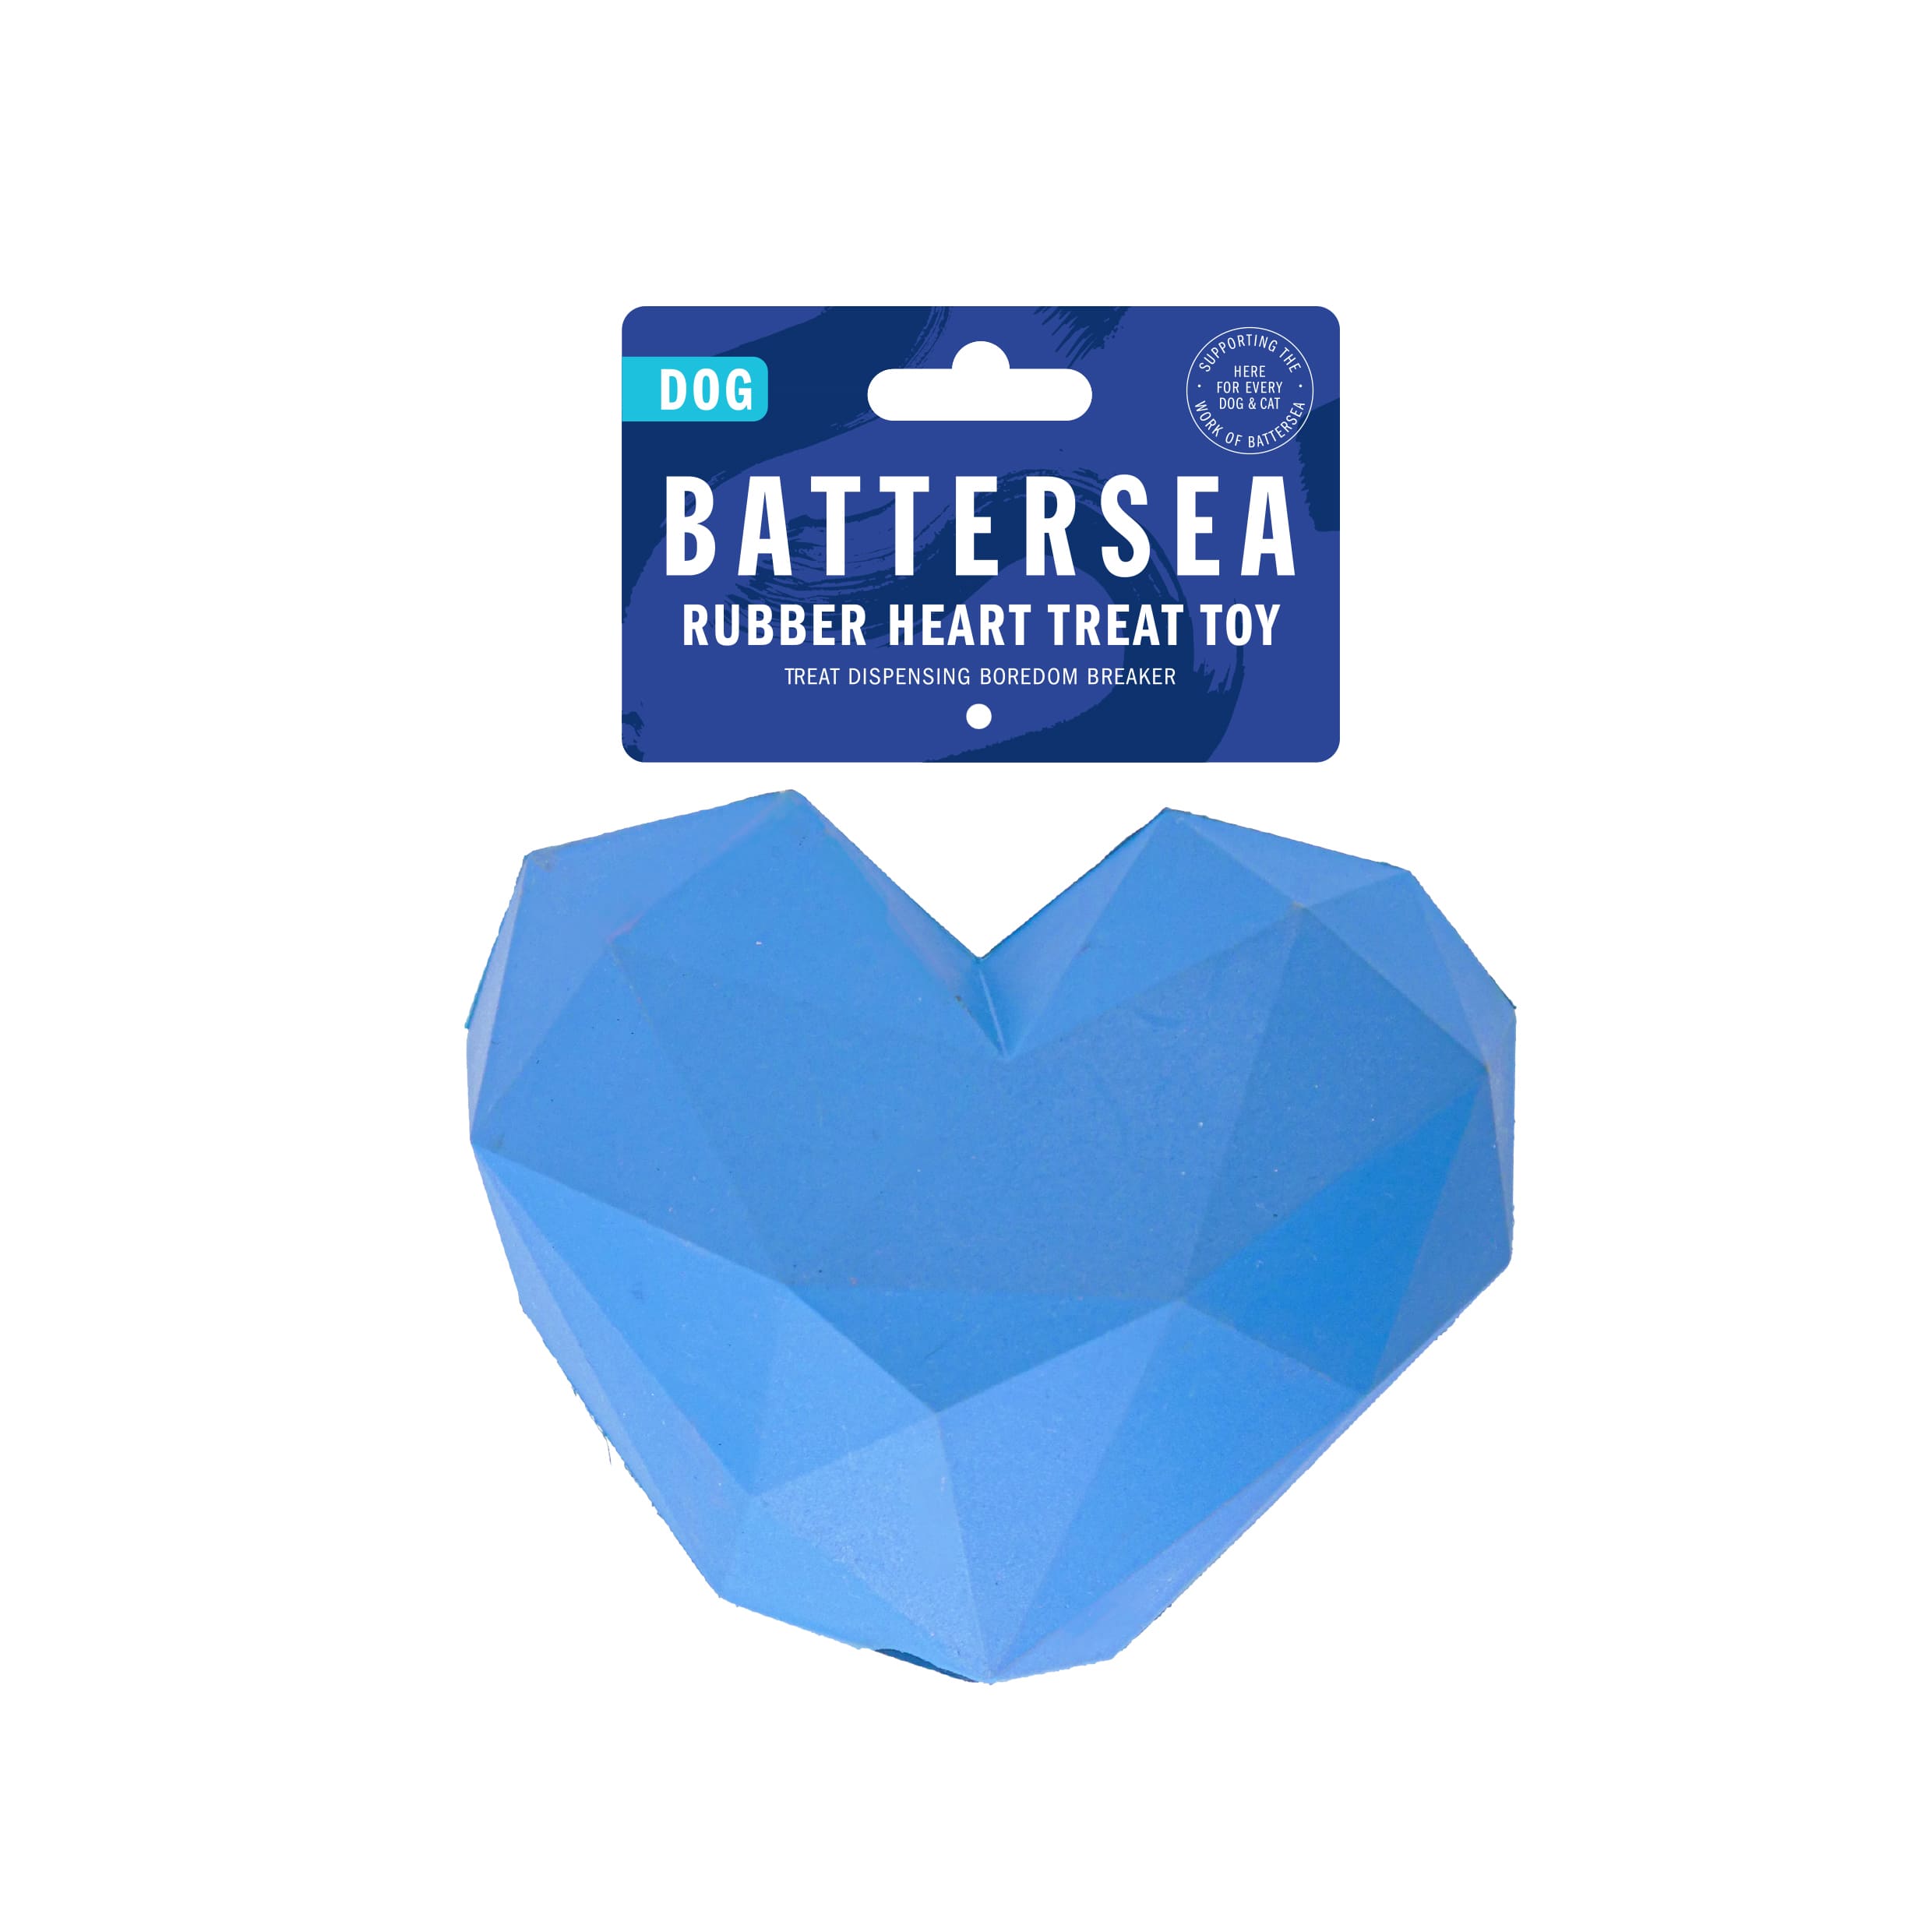 Battersea Dog Rubber Heart Treat Toy